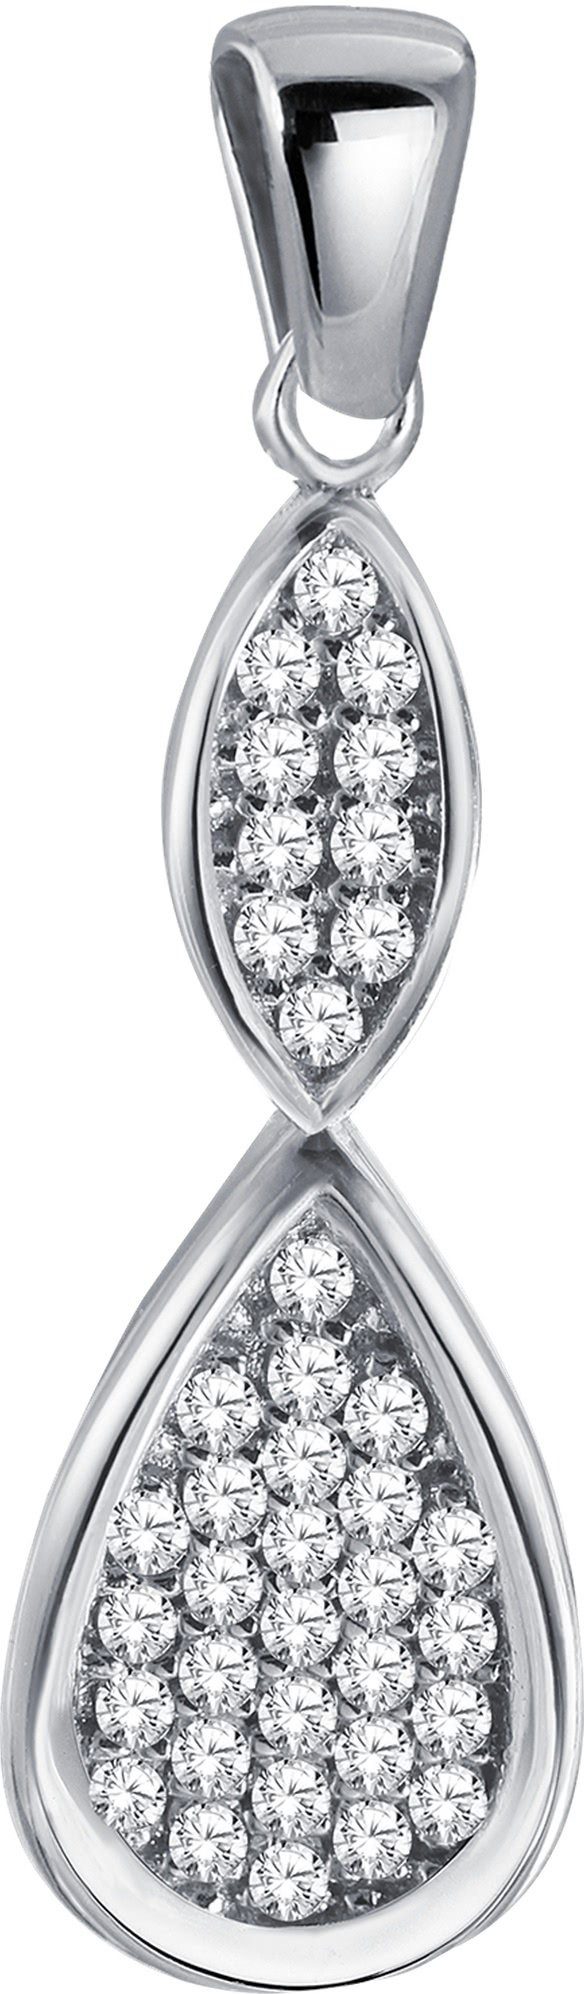 Balia Kettenanhänger Balia Damen Kettenanhänger Silber, Kettenanhänger (Unendlich) ca. 3,7cm, 925 Sterling Silber